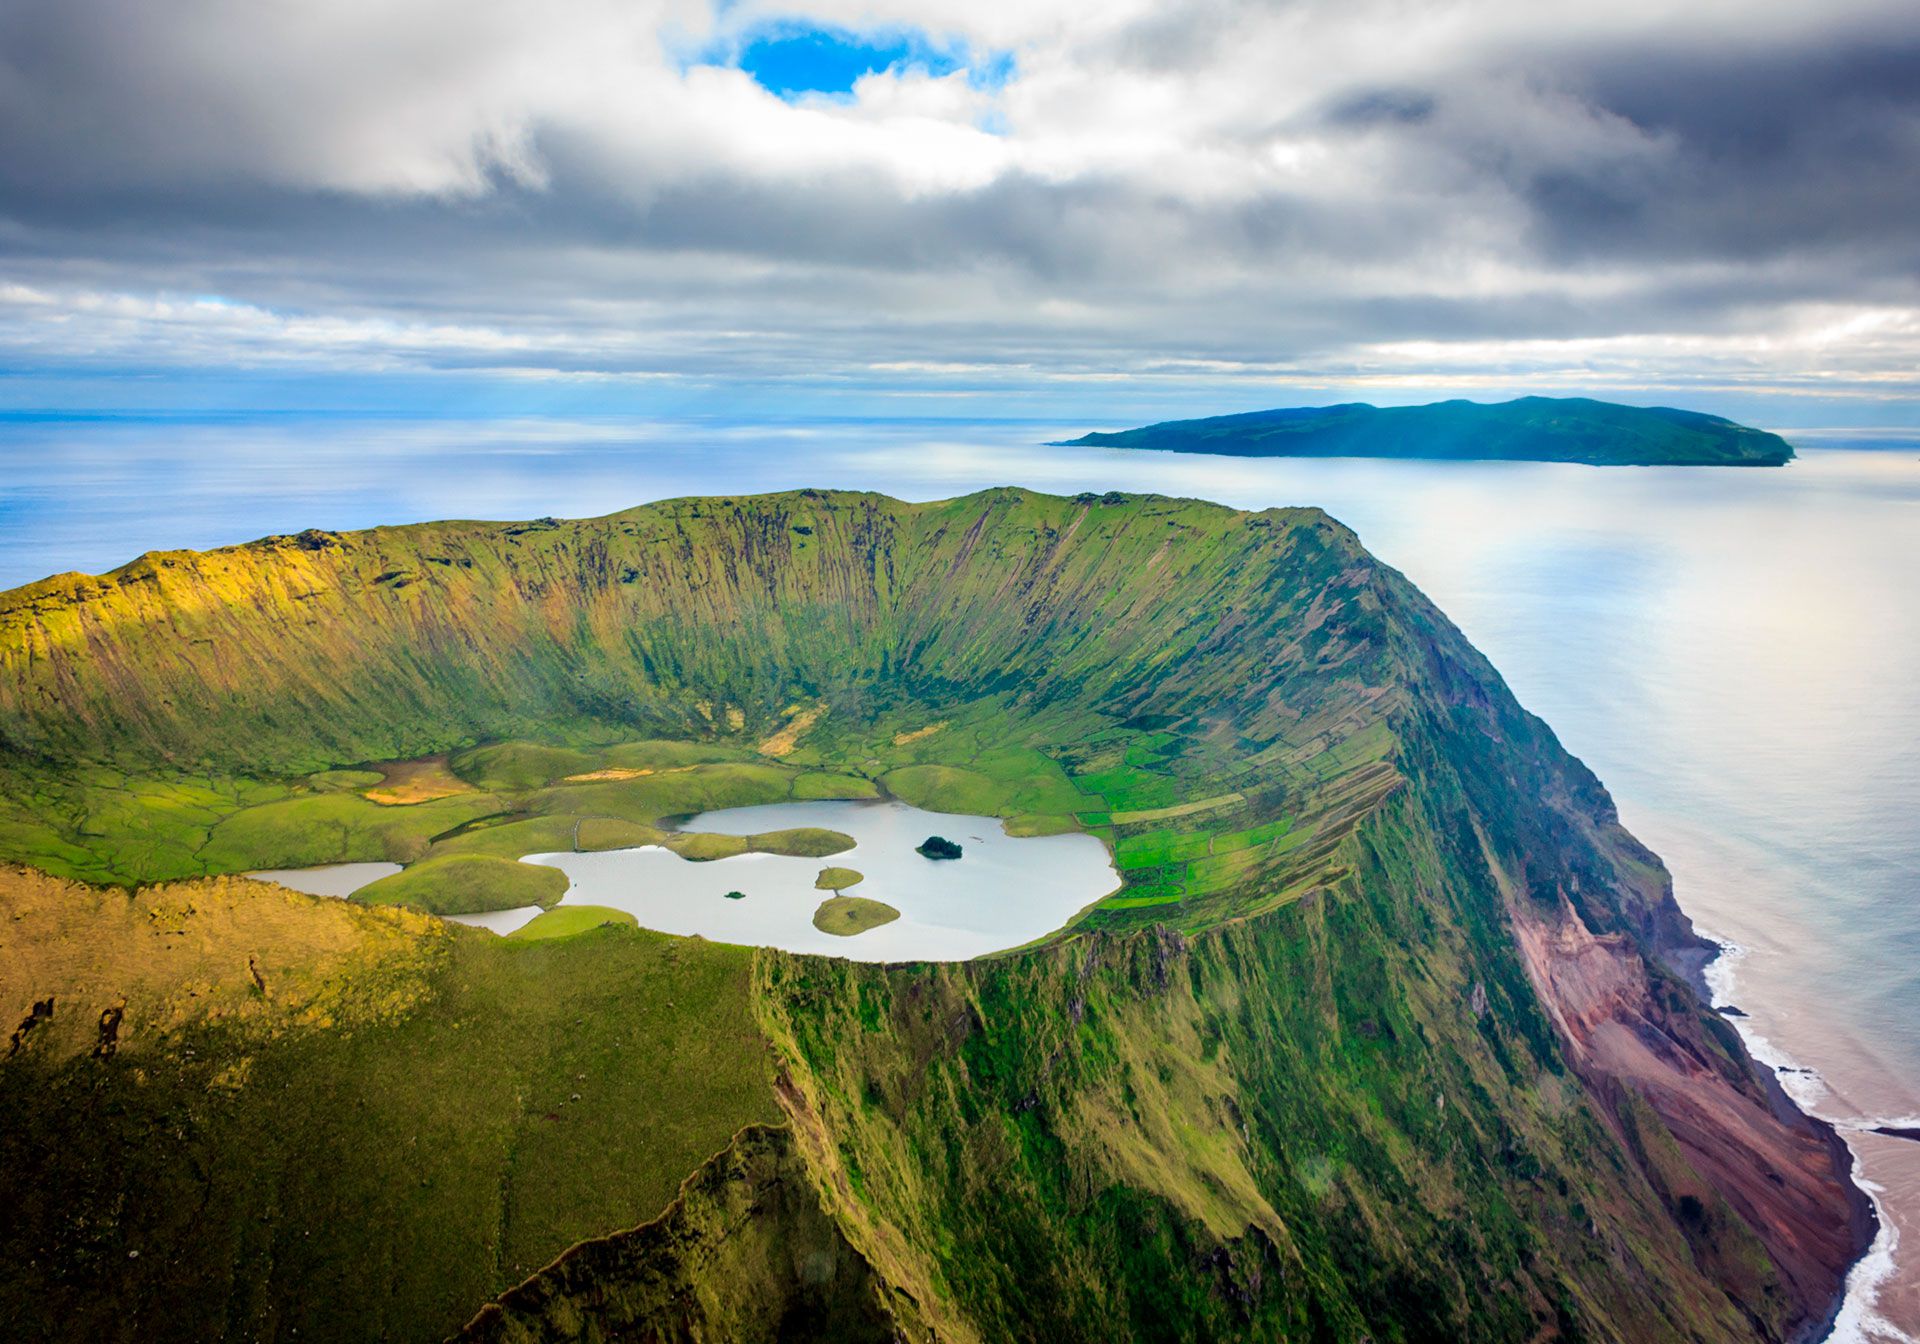 La UNESCO considera Patrimonio Mundial el Centro Histórico de Angra do Heroísmo, en la isla de Terceira desde 1983, y el Paisaje Vitivinícola de la isla de Pico desde 2004 (Shutterstock)